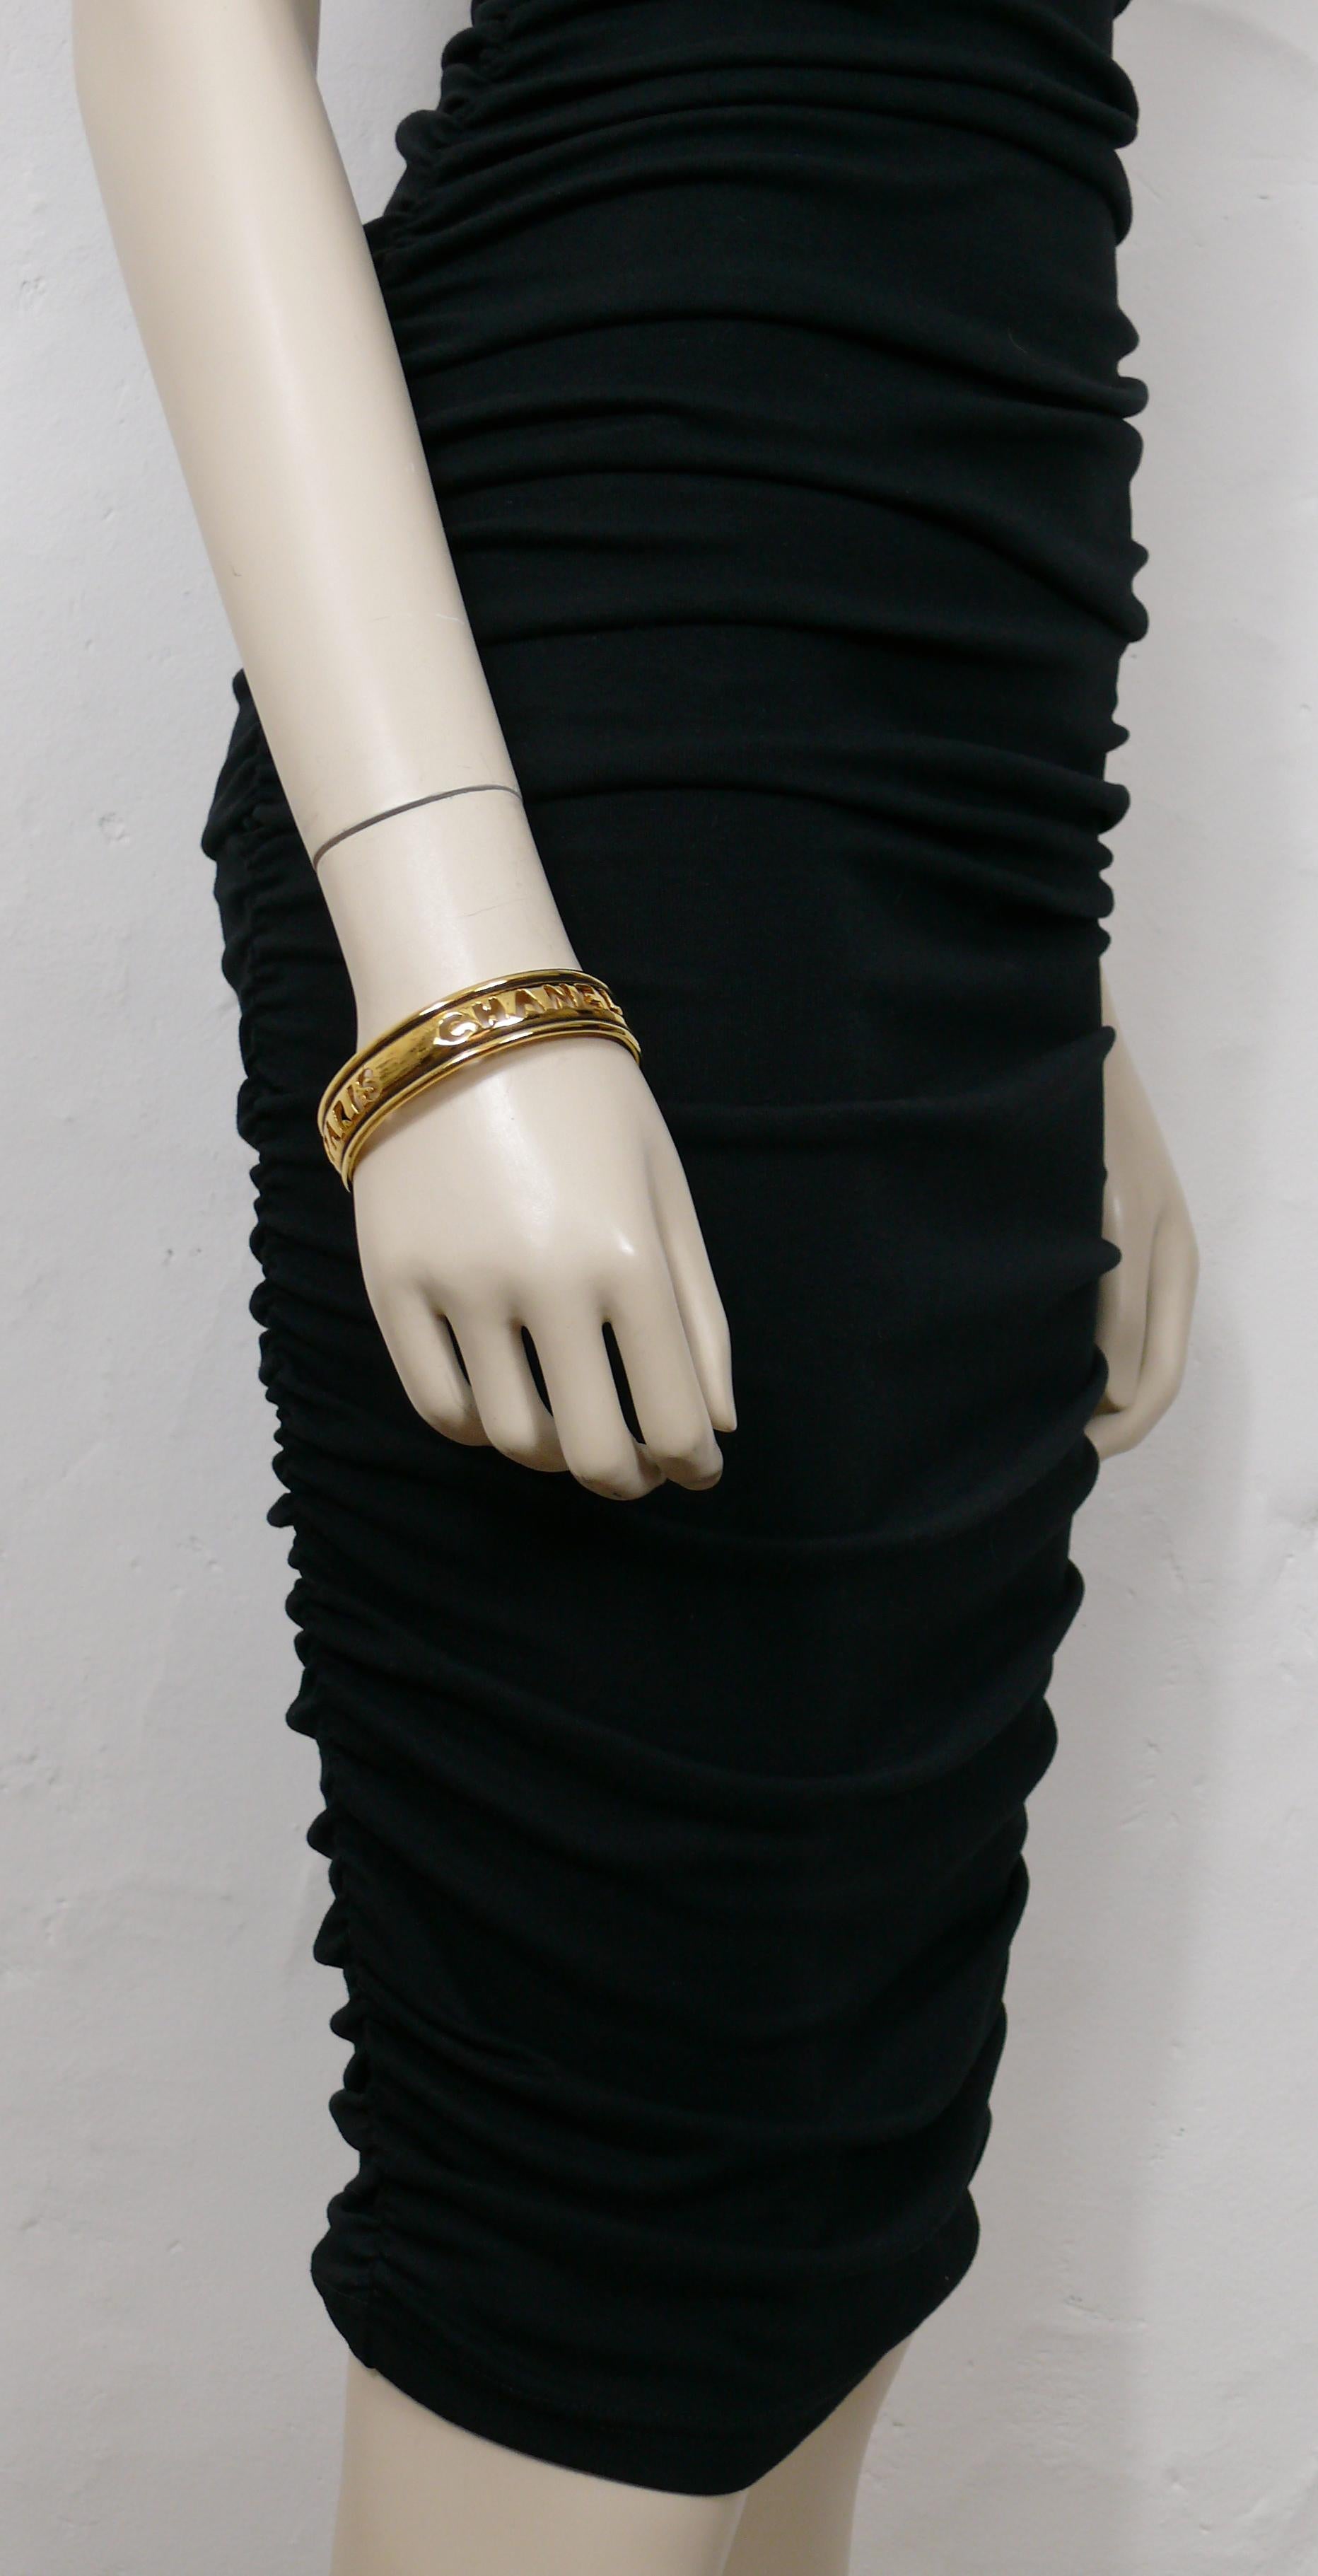 CHANEL vintage des années 1980, bracelet en or patiné avec des découpes CHANEL PARIS.

Non signé (habituel sur ce modèle).

Mesures indicatives : circonférence intérieure environ 21,99 cm (8,66 pouces) / largeur environ 1,6 cm (0,63 pouce).

Livré